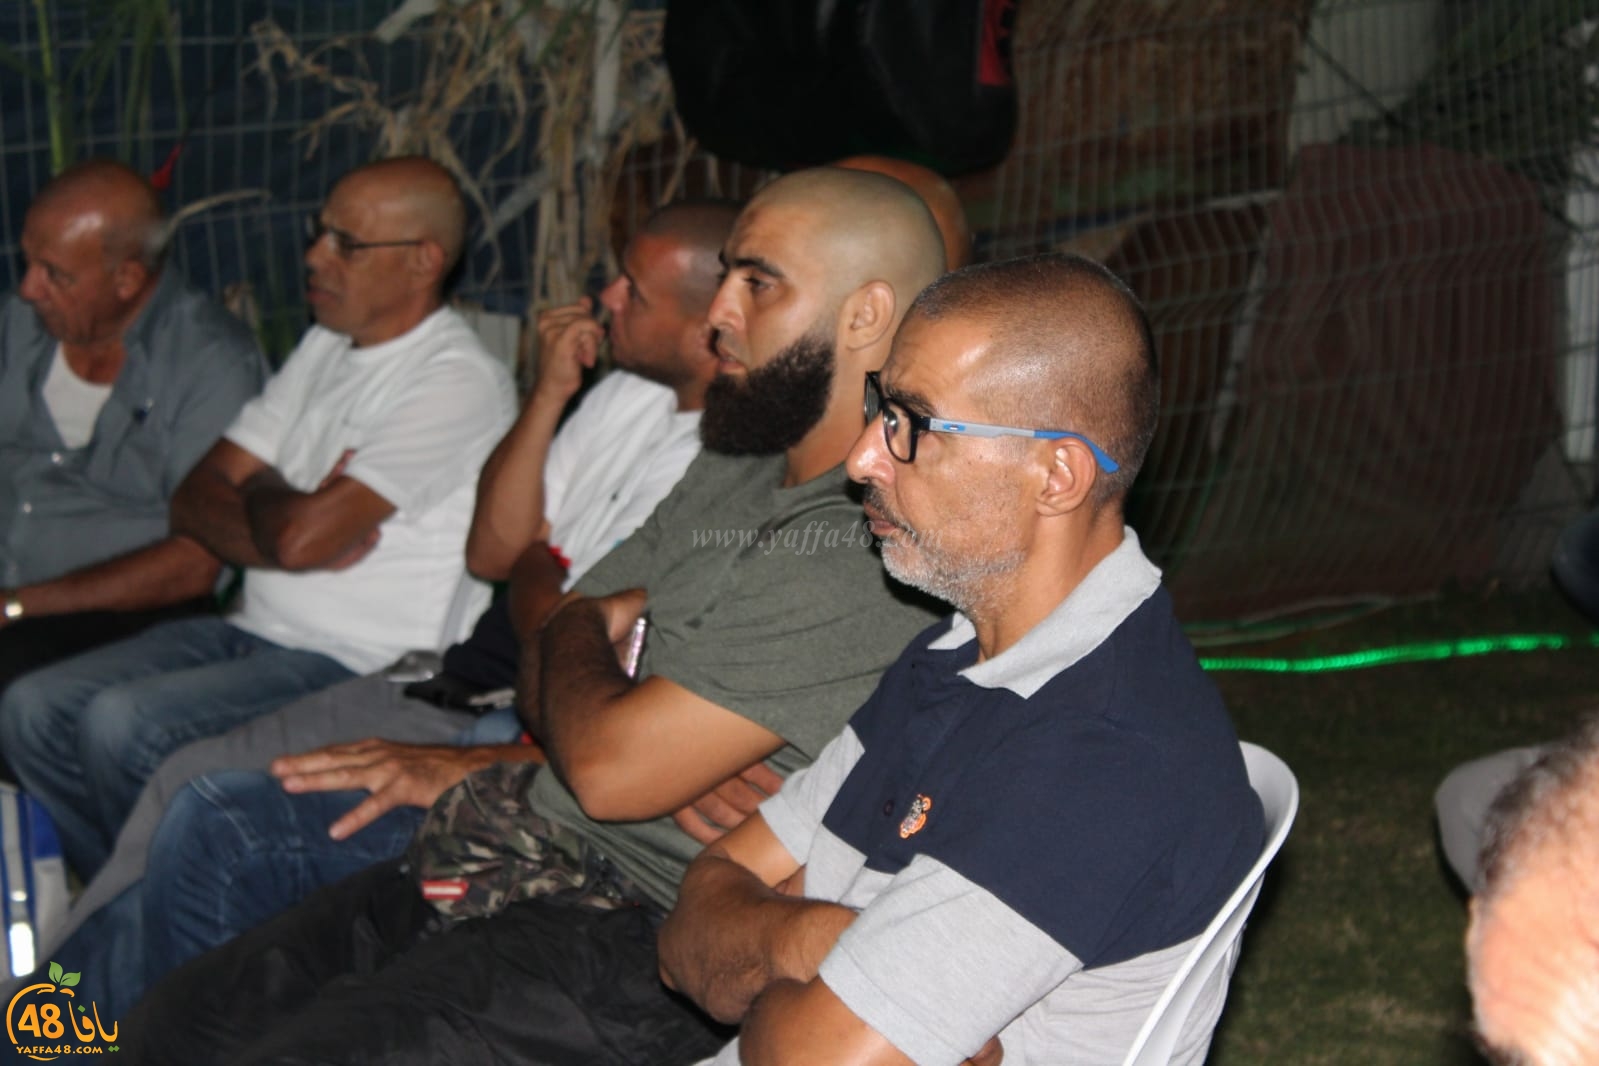  بالصور: خيمة الهدى الدعوية تُنظم أمسية ايمانية في مدينة يافا 